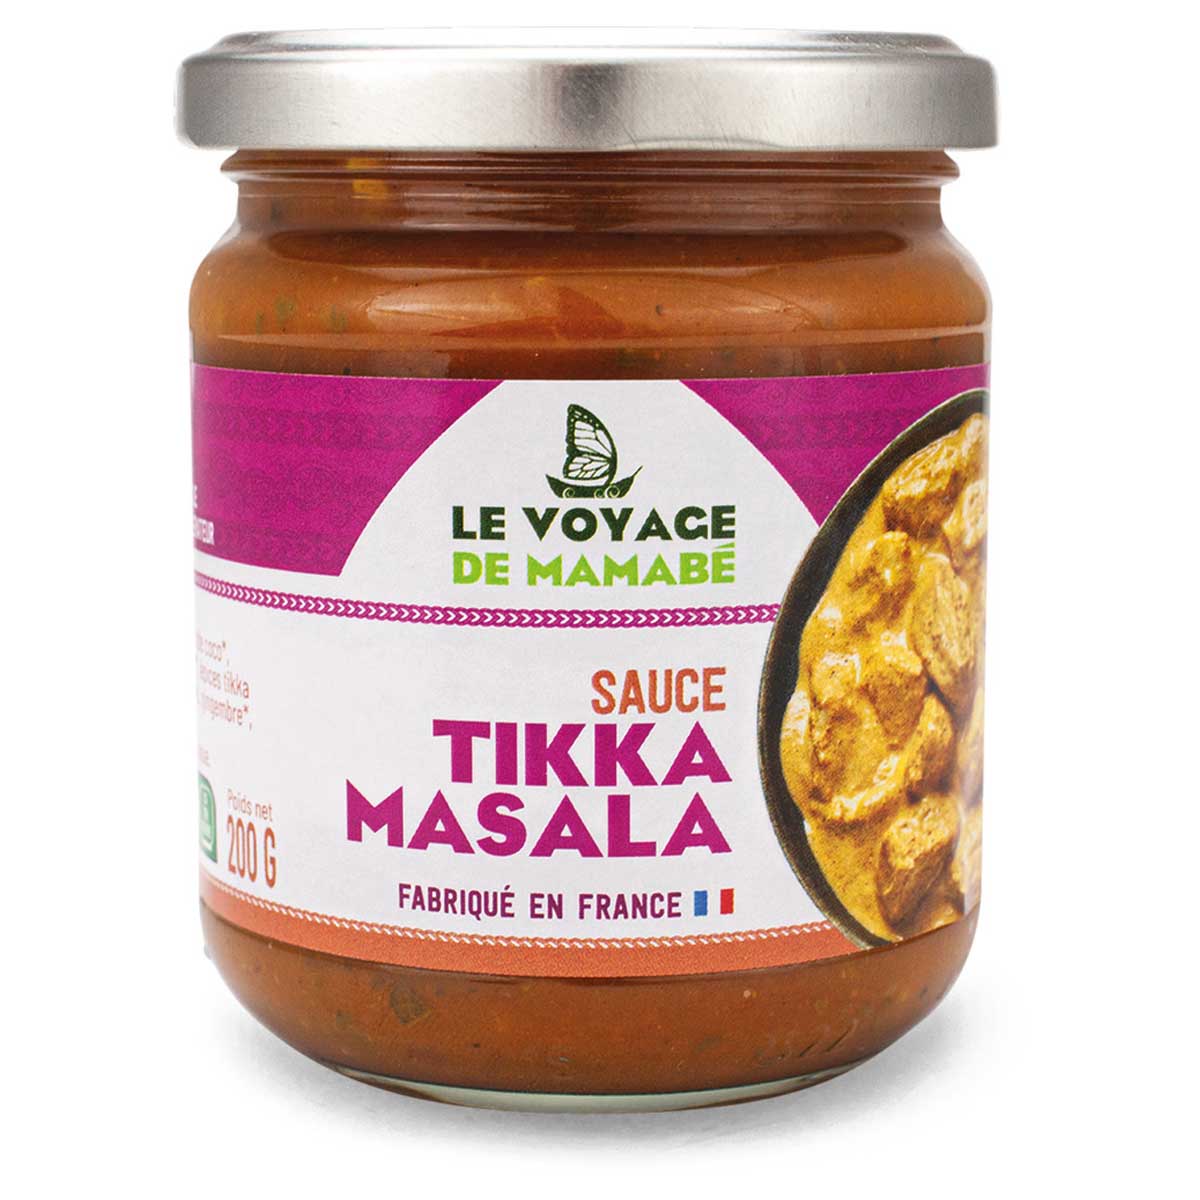 Le Voyage de Mamabé - Sauce tikka masala 200g